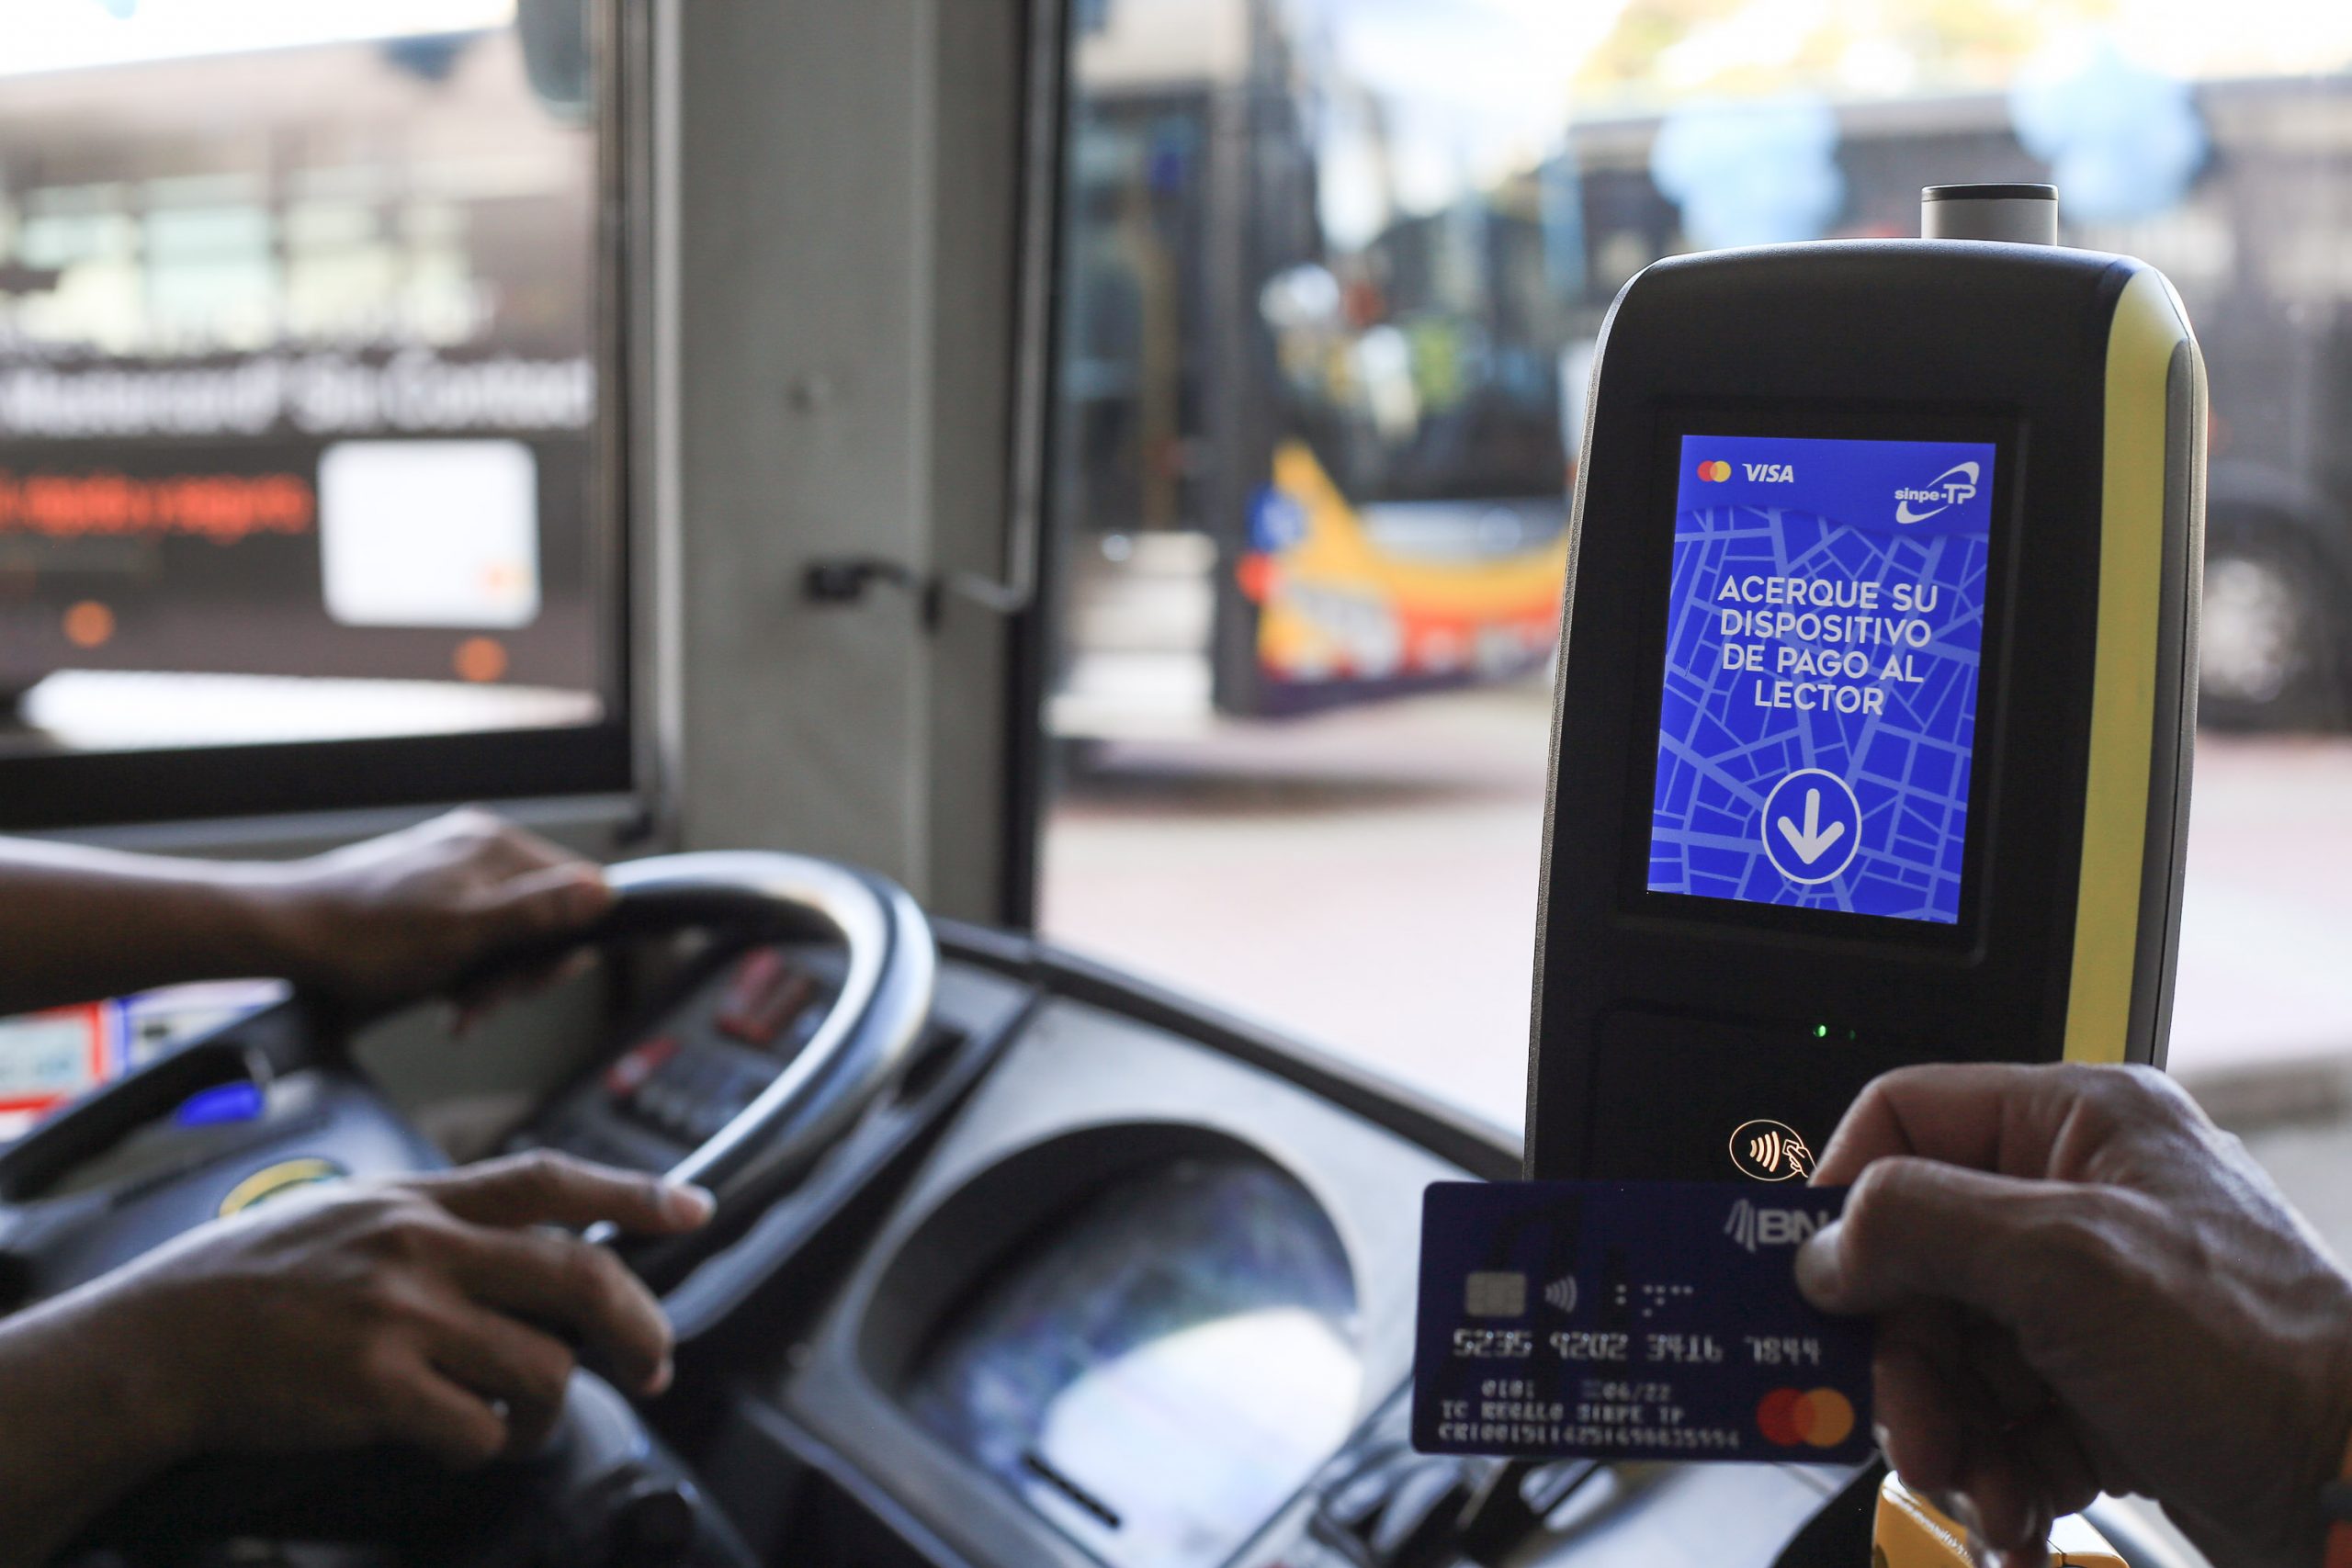 Pago electrónico en el transporte público en aumento: Ya se alcanzó un millón de transacciones